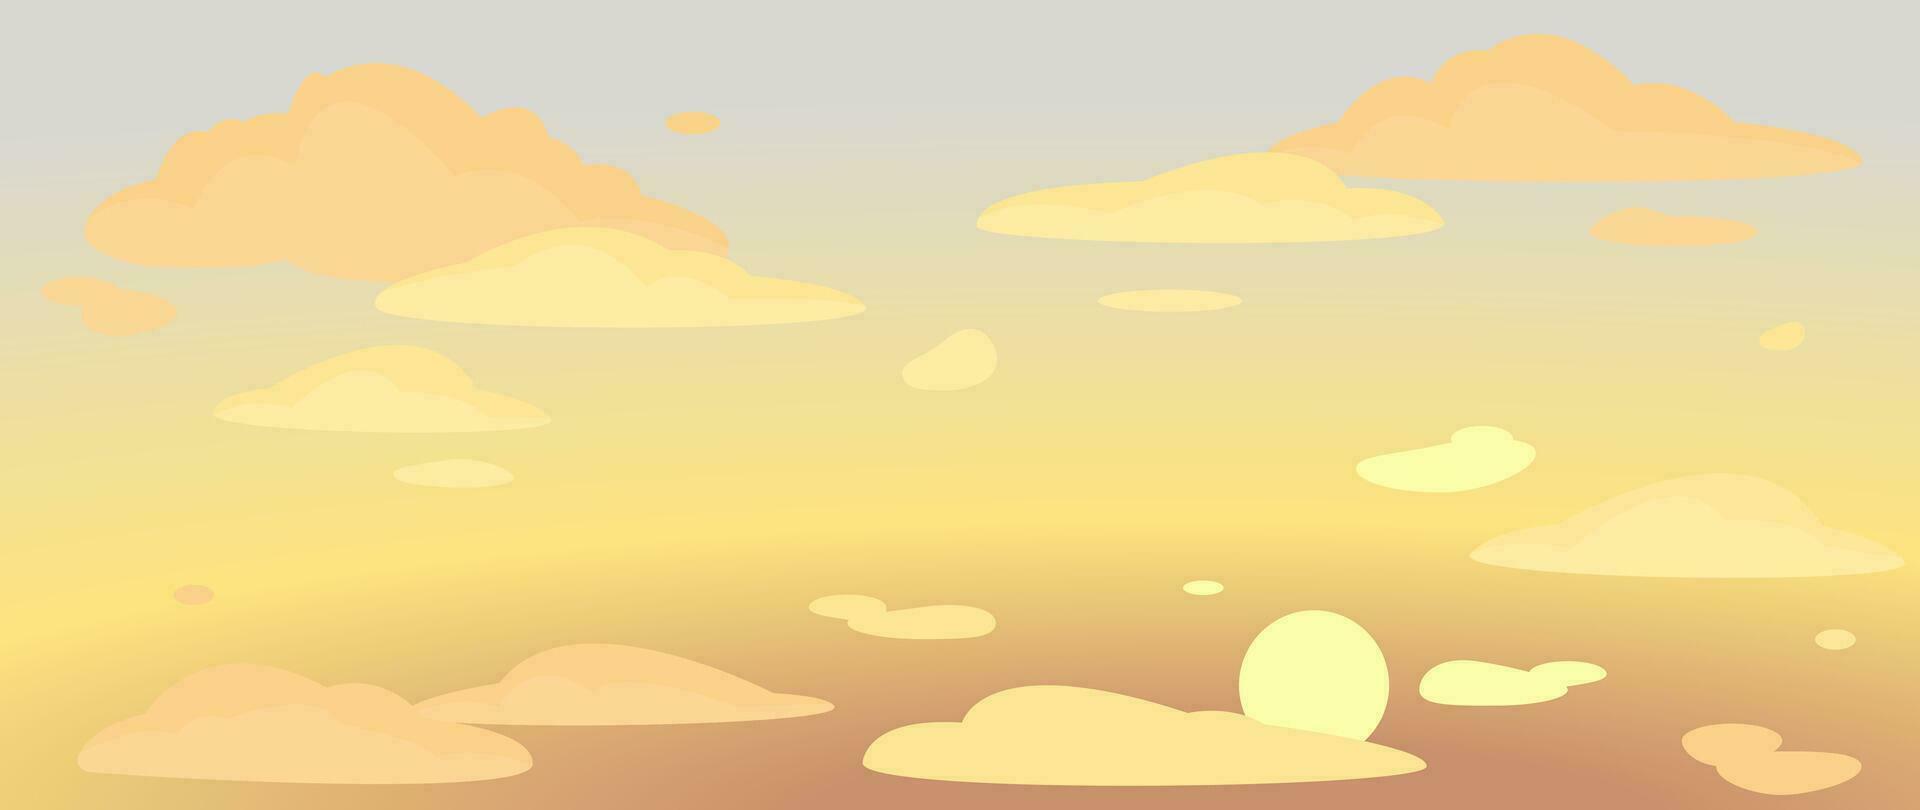 bakgrund av de kväll himmel, solnedgång och moln. vektor illustration för omslag, baner, affisch, webb och förpackning.